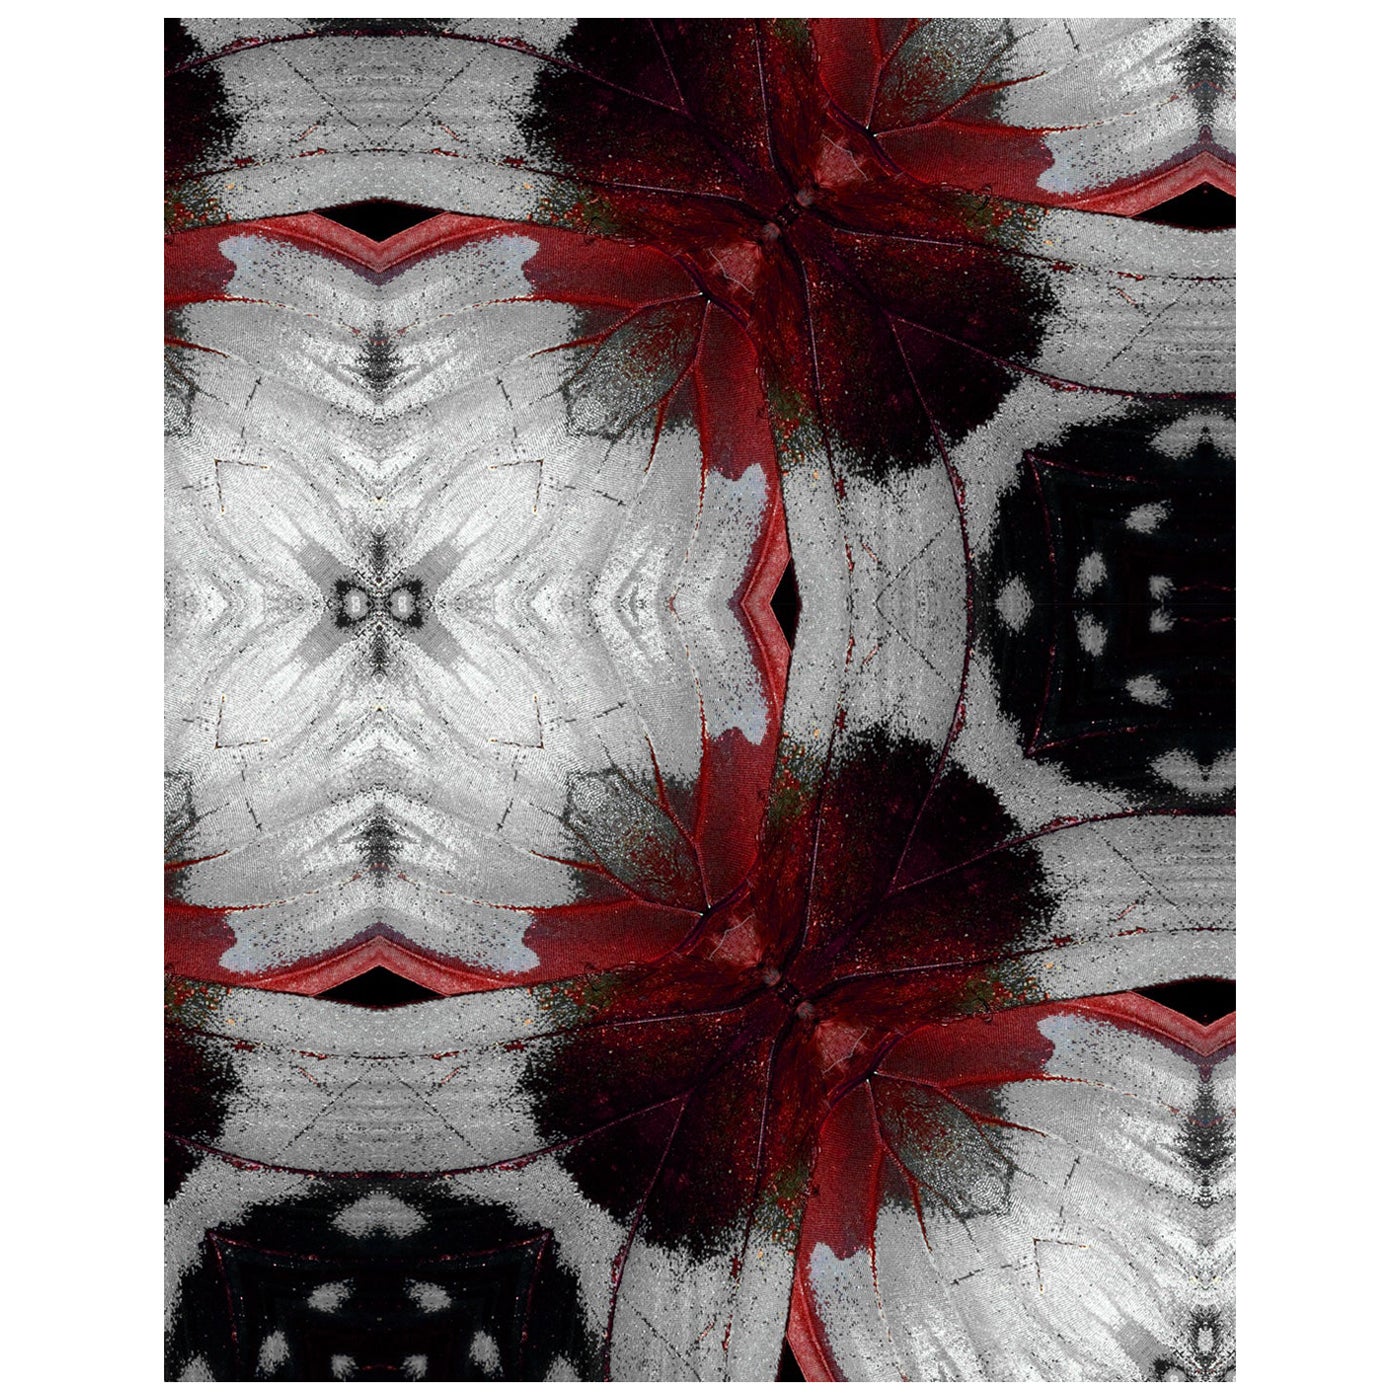 EDGE Kollektionen Blossom Drifter Rouge aus unserer Drifter-Serie 